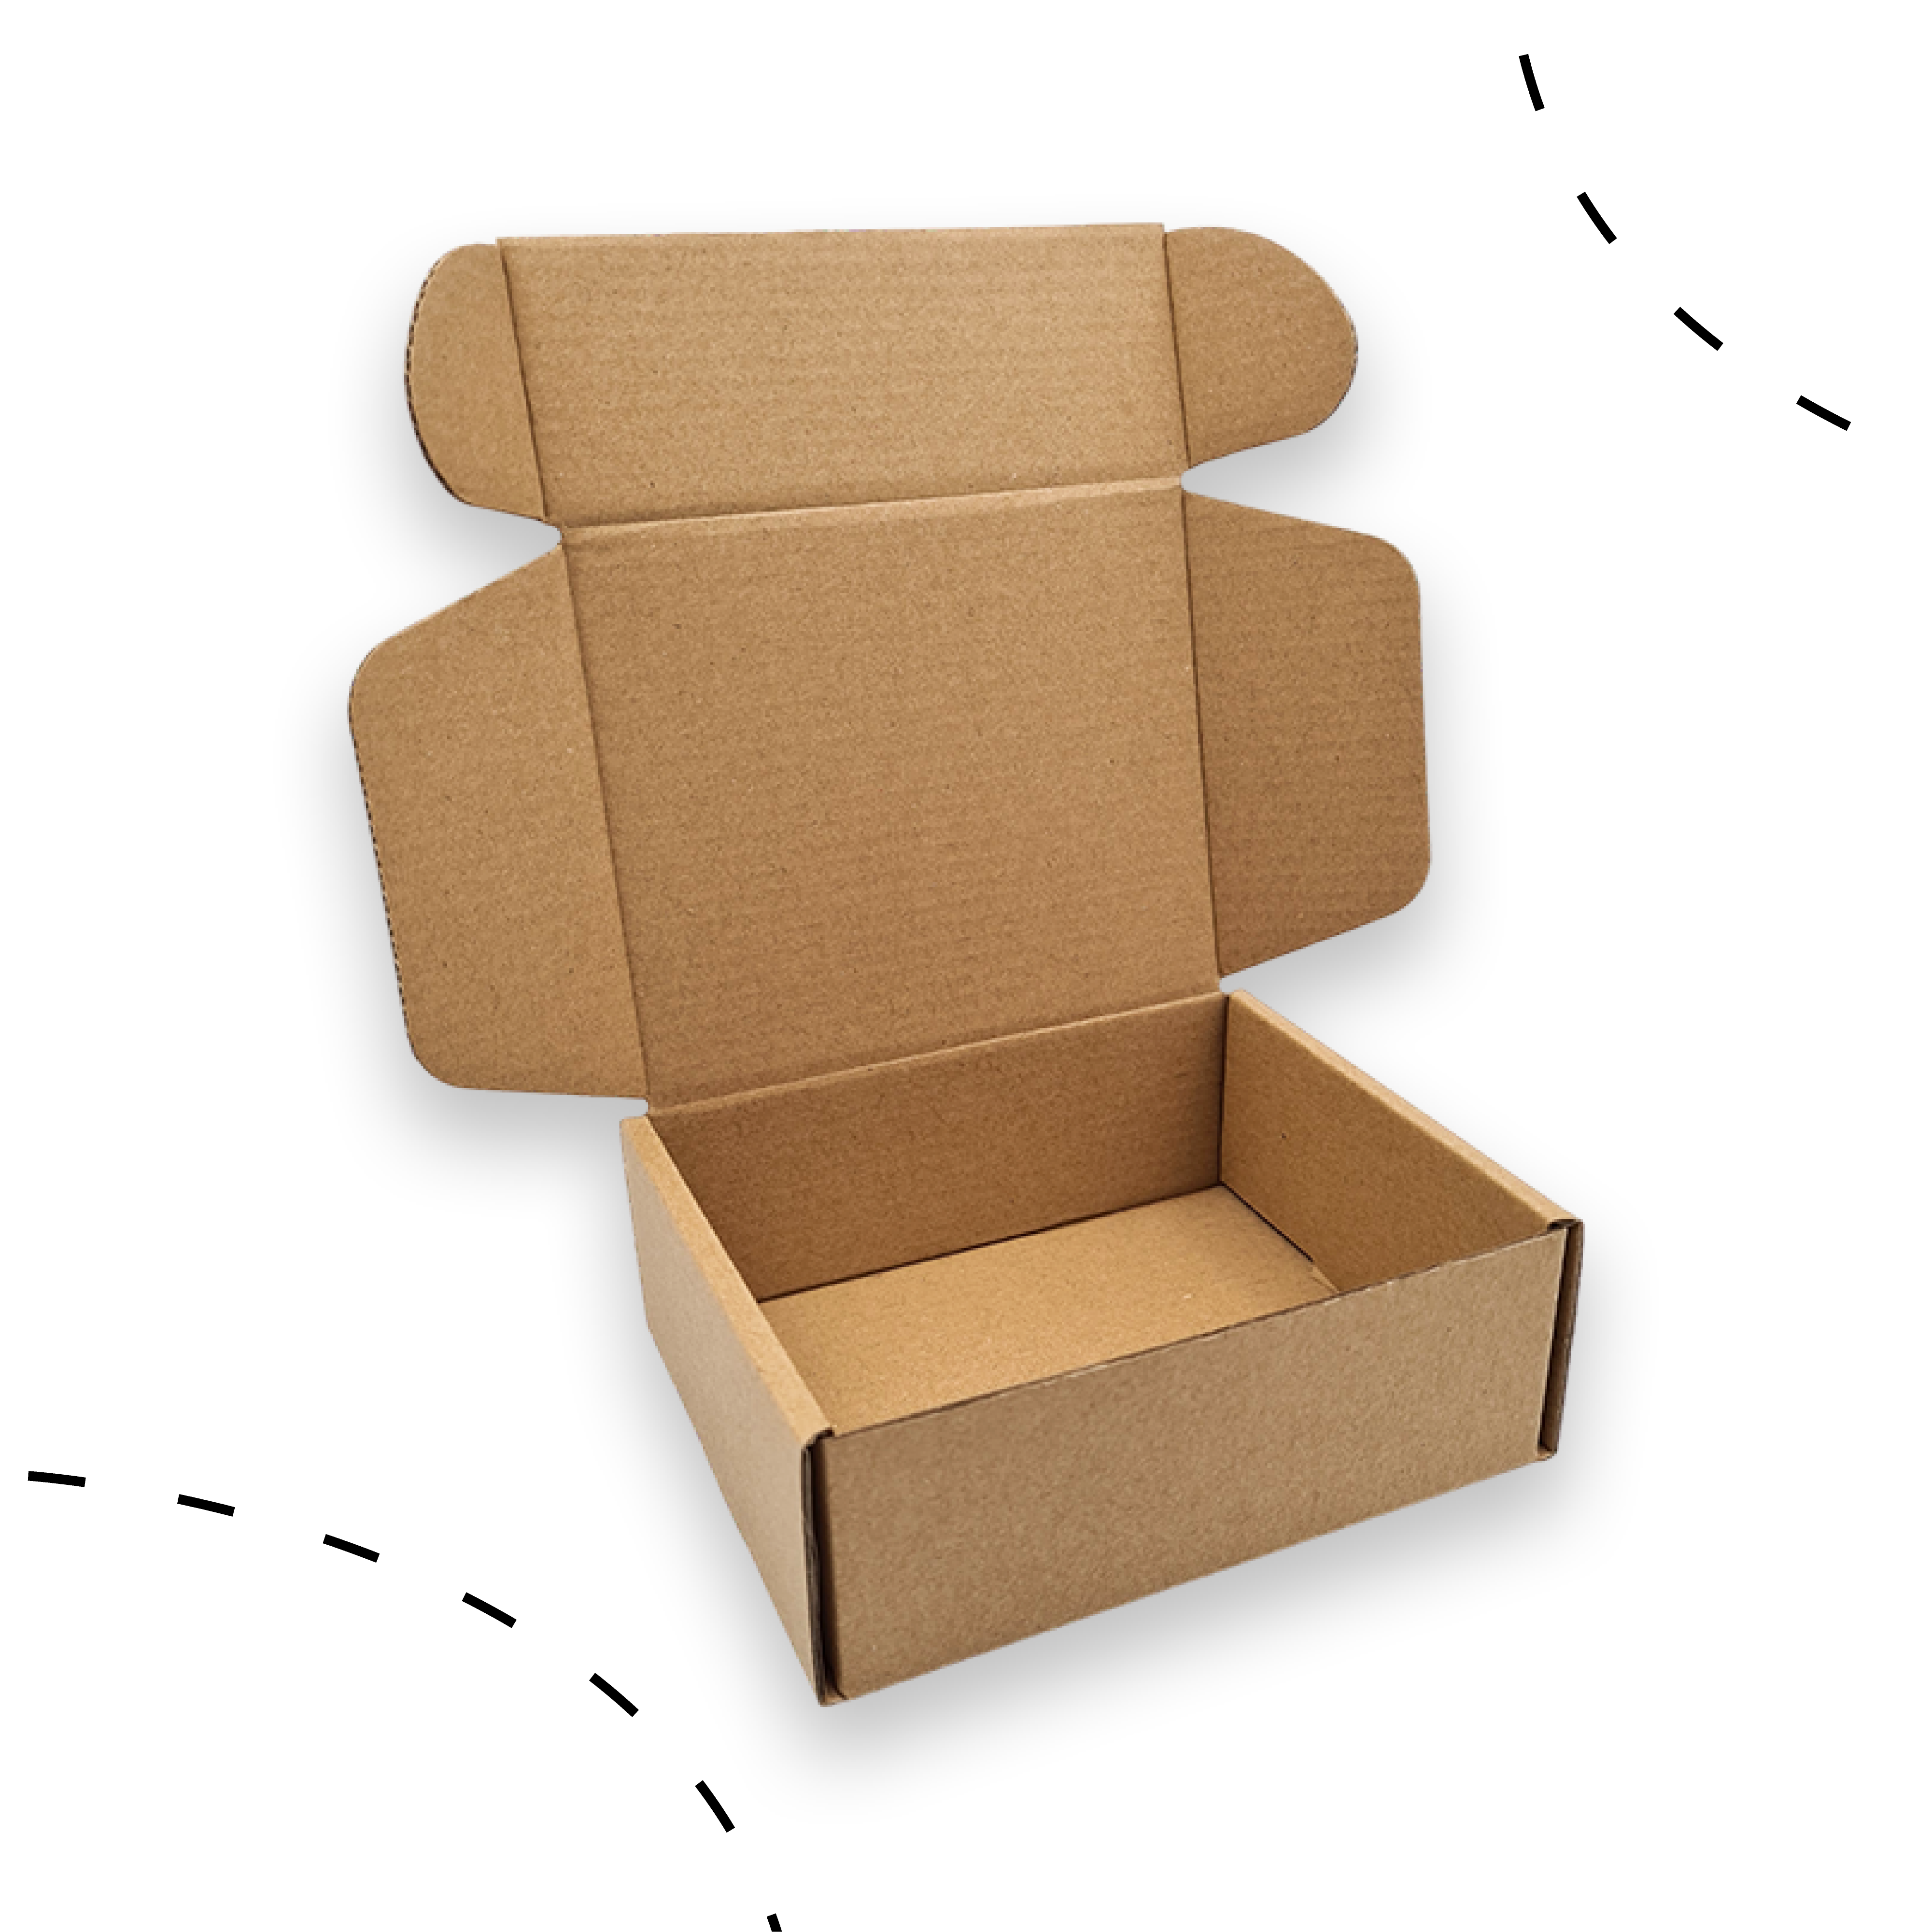 E-commerce Box